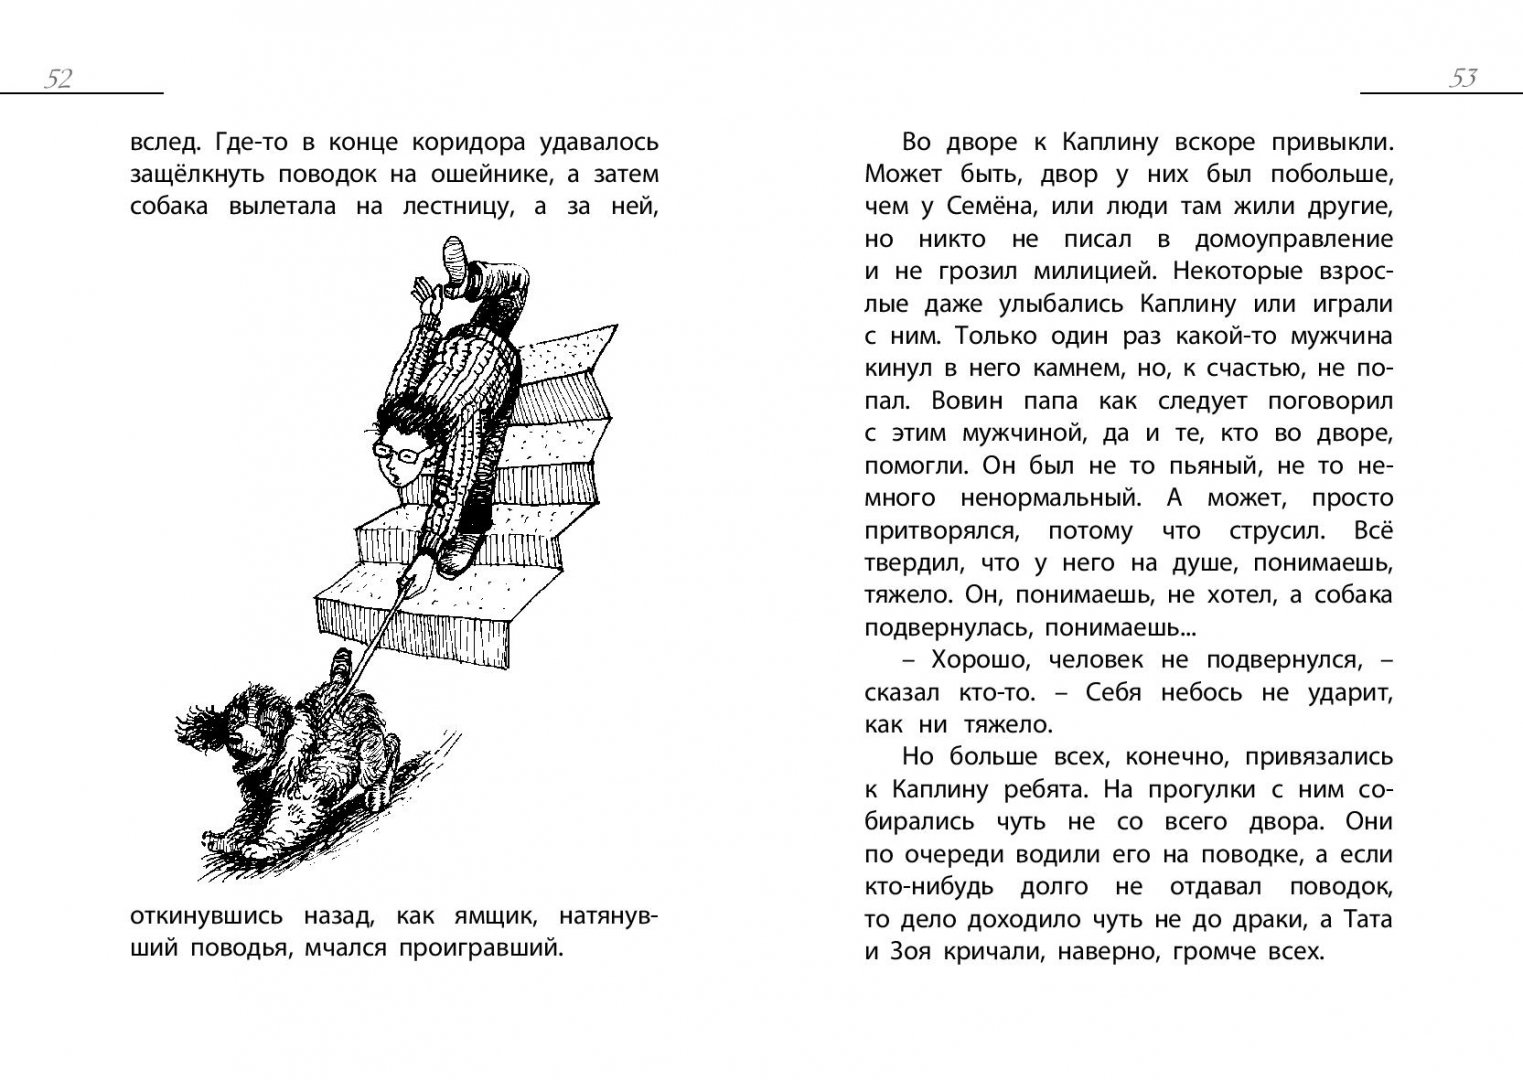 Иллюстрация 4 из 8 для Кап, иди сюда - Юрий Хазанов | Лабиринт - книги. Источник: Лабиринт